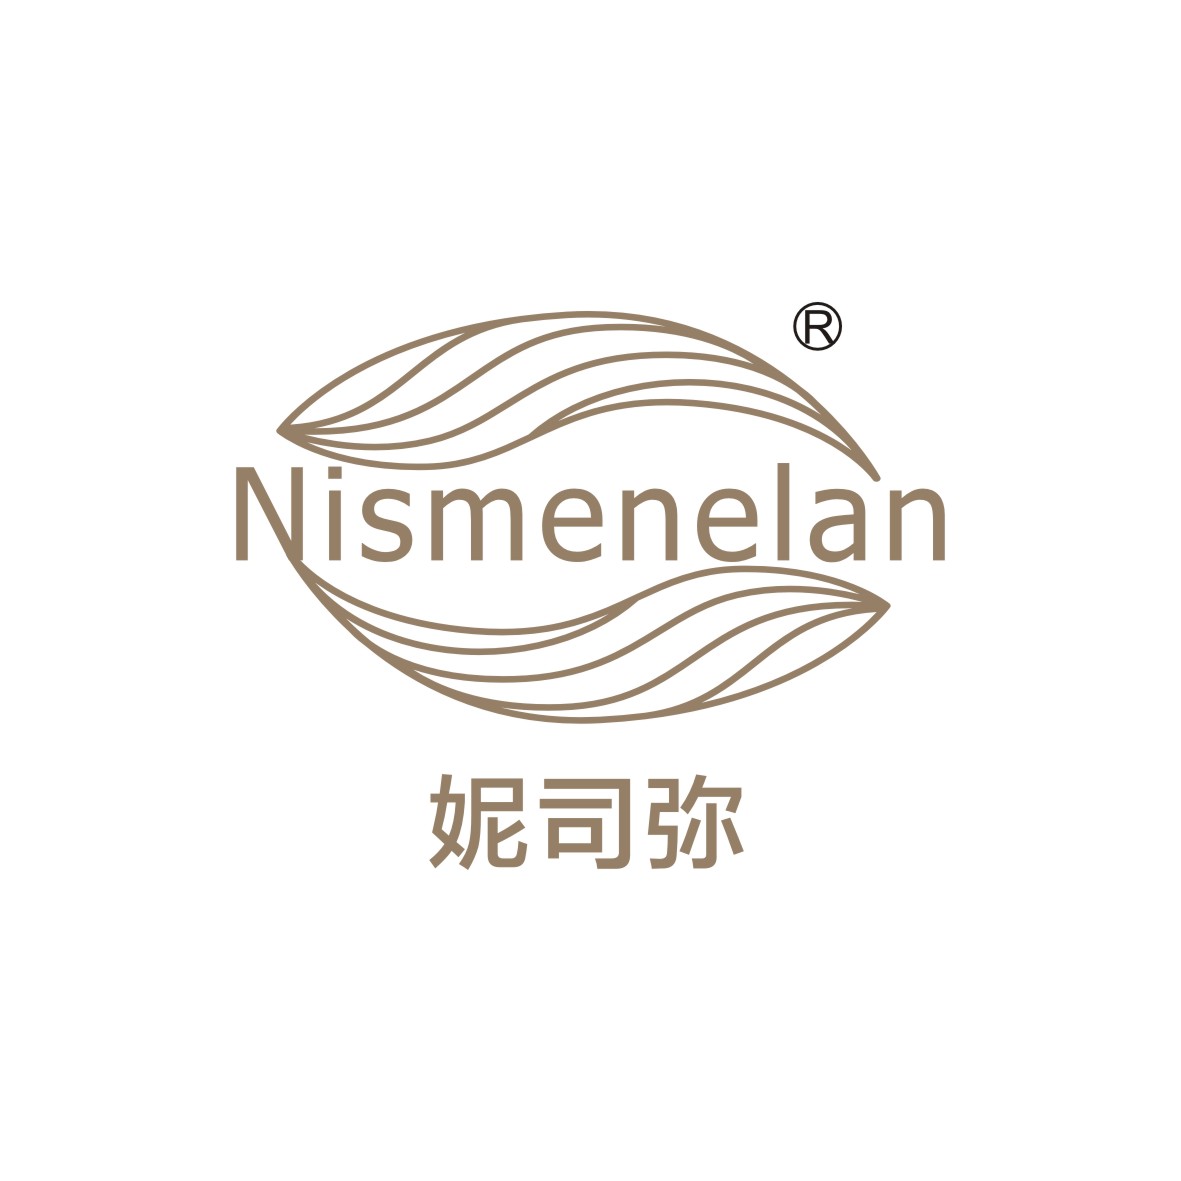 广州市舒哲电子商务商行商标妮司弥 NISMENELAN（30类）商标买卖平台报价，上哪个平台最省钱？